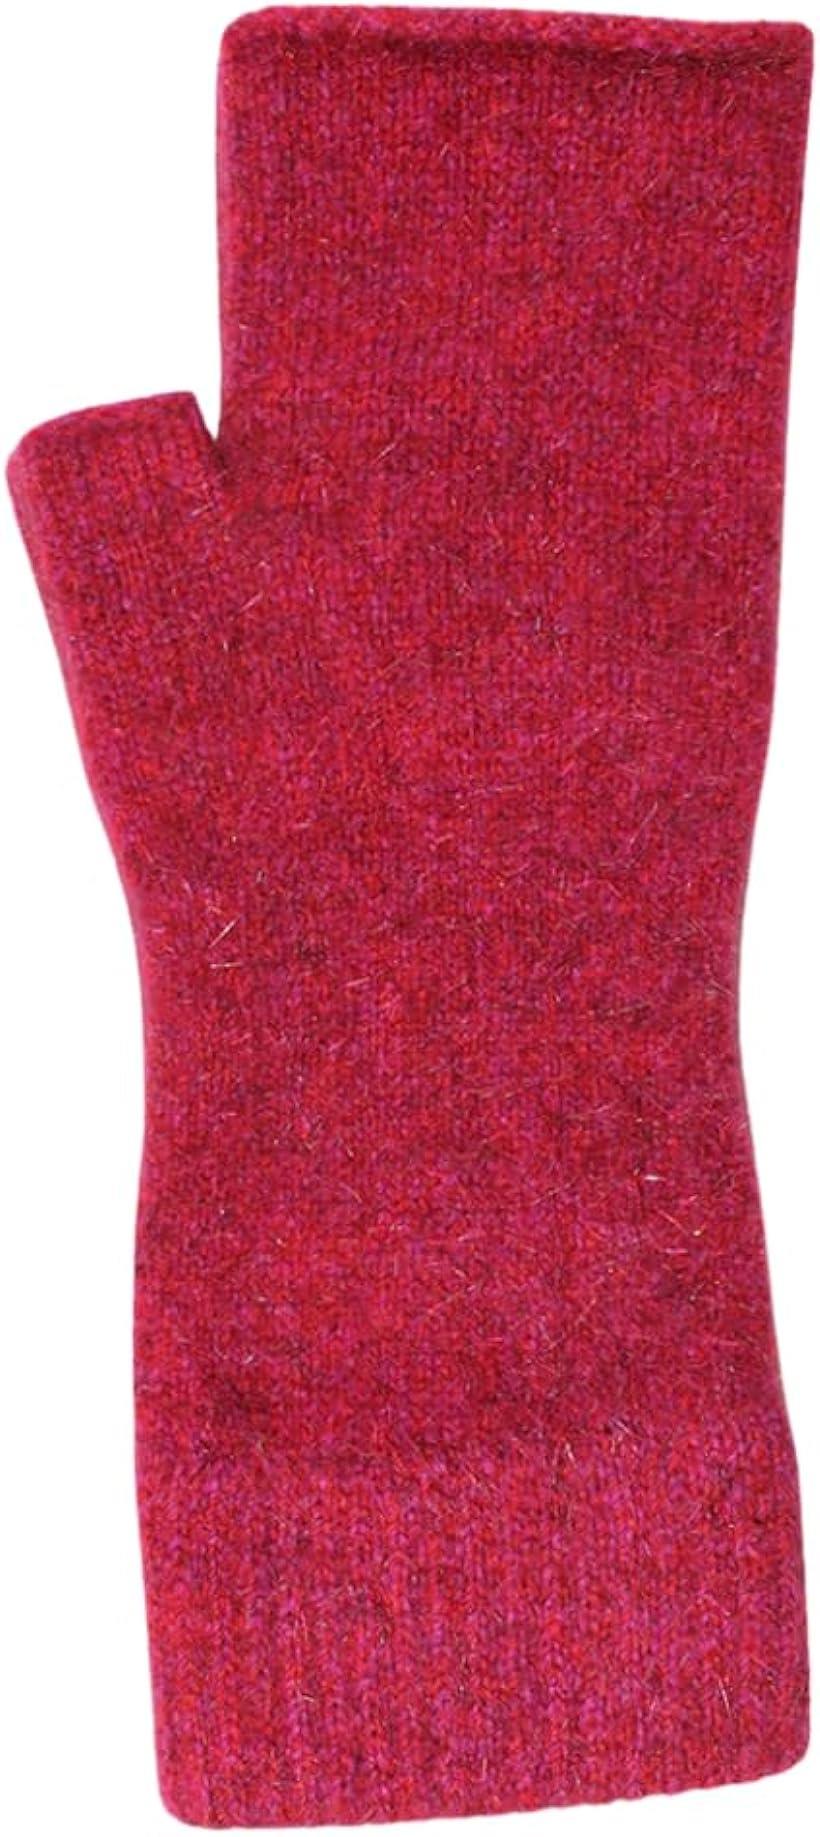 LOTHLORIAN ポッサムメリノハンドウォーマー ウール手袋 ウールミトン 指空き手袋 タッチパネル対応 防寒 保温 冷え対策 (ラズベリー)